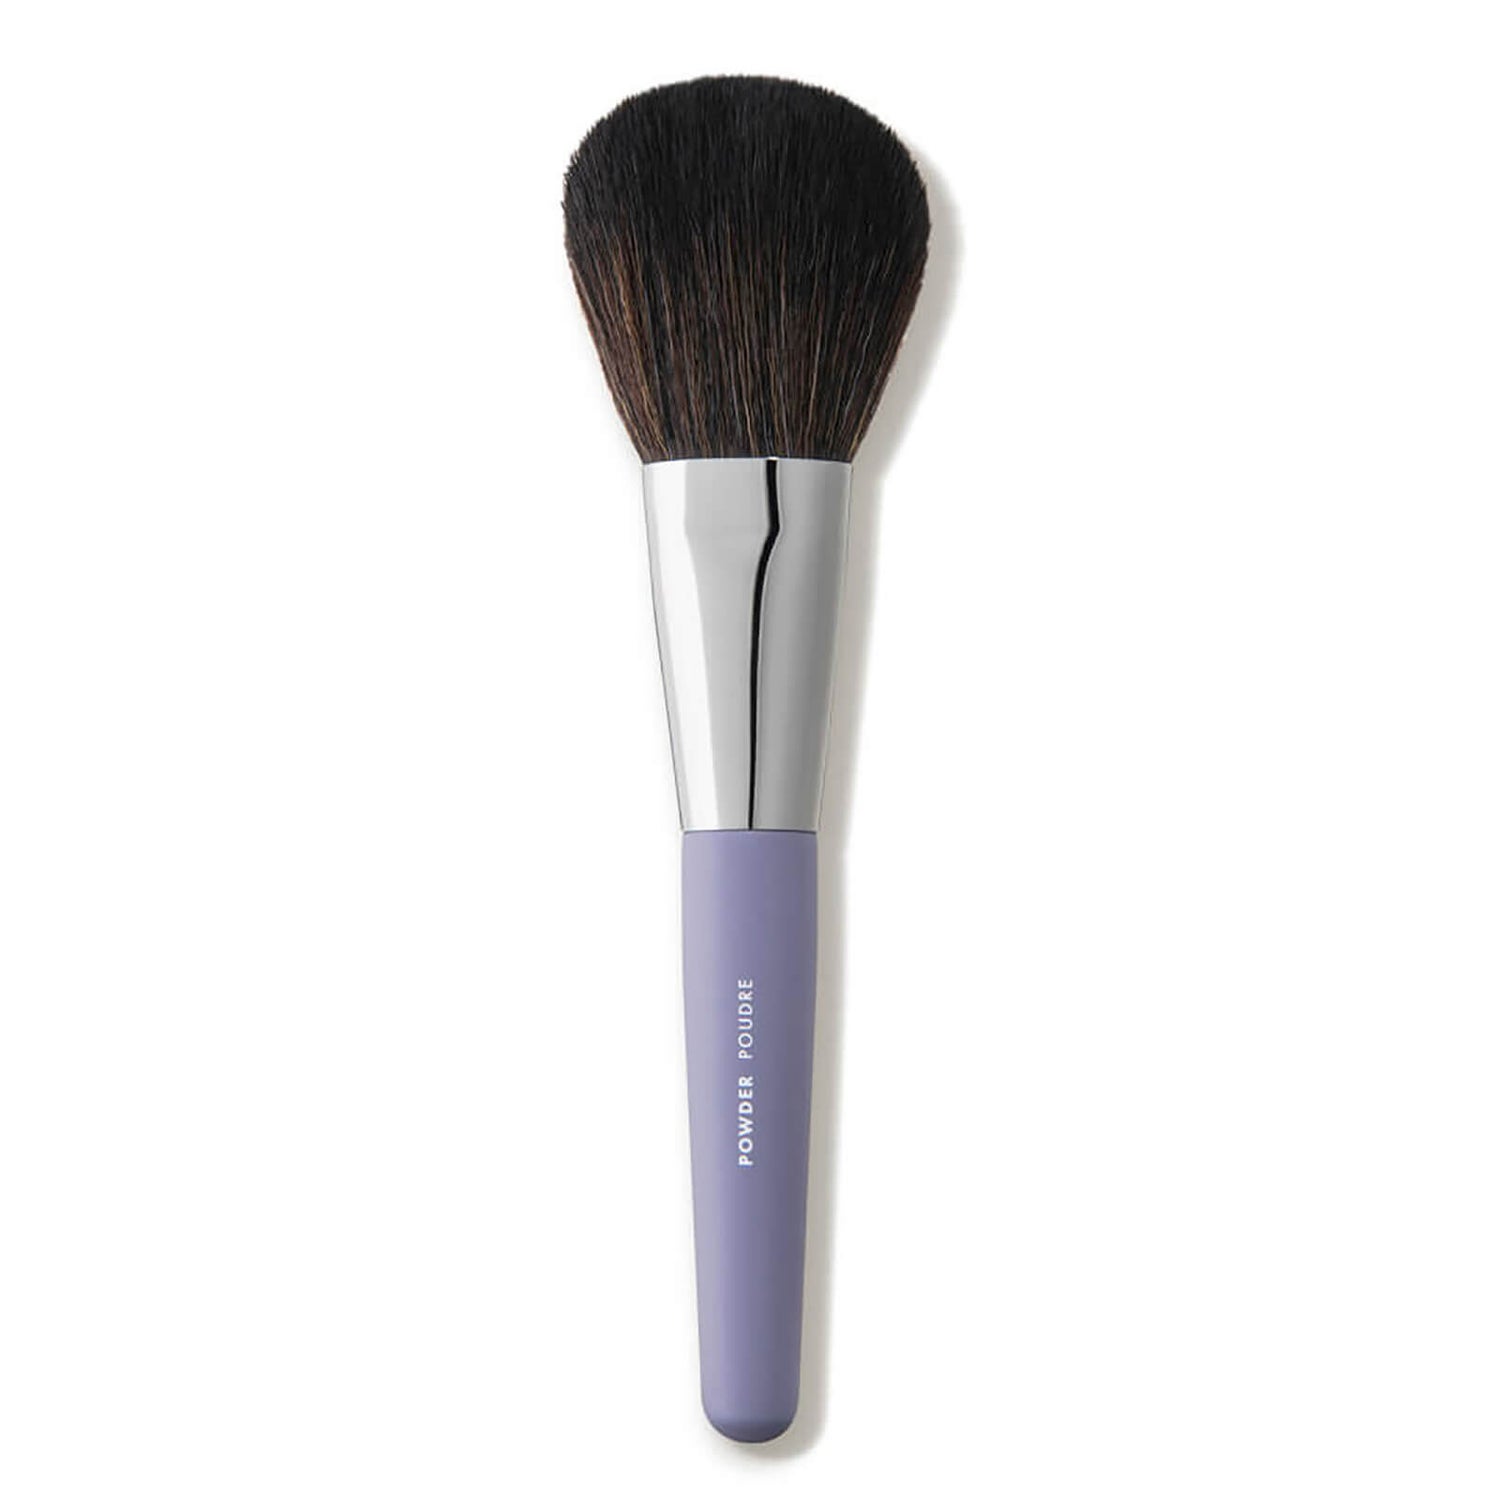 Vapour Beauty Brush - Powder 1.255 oz